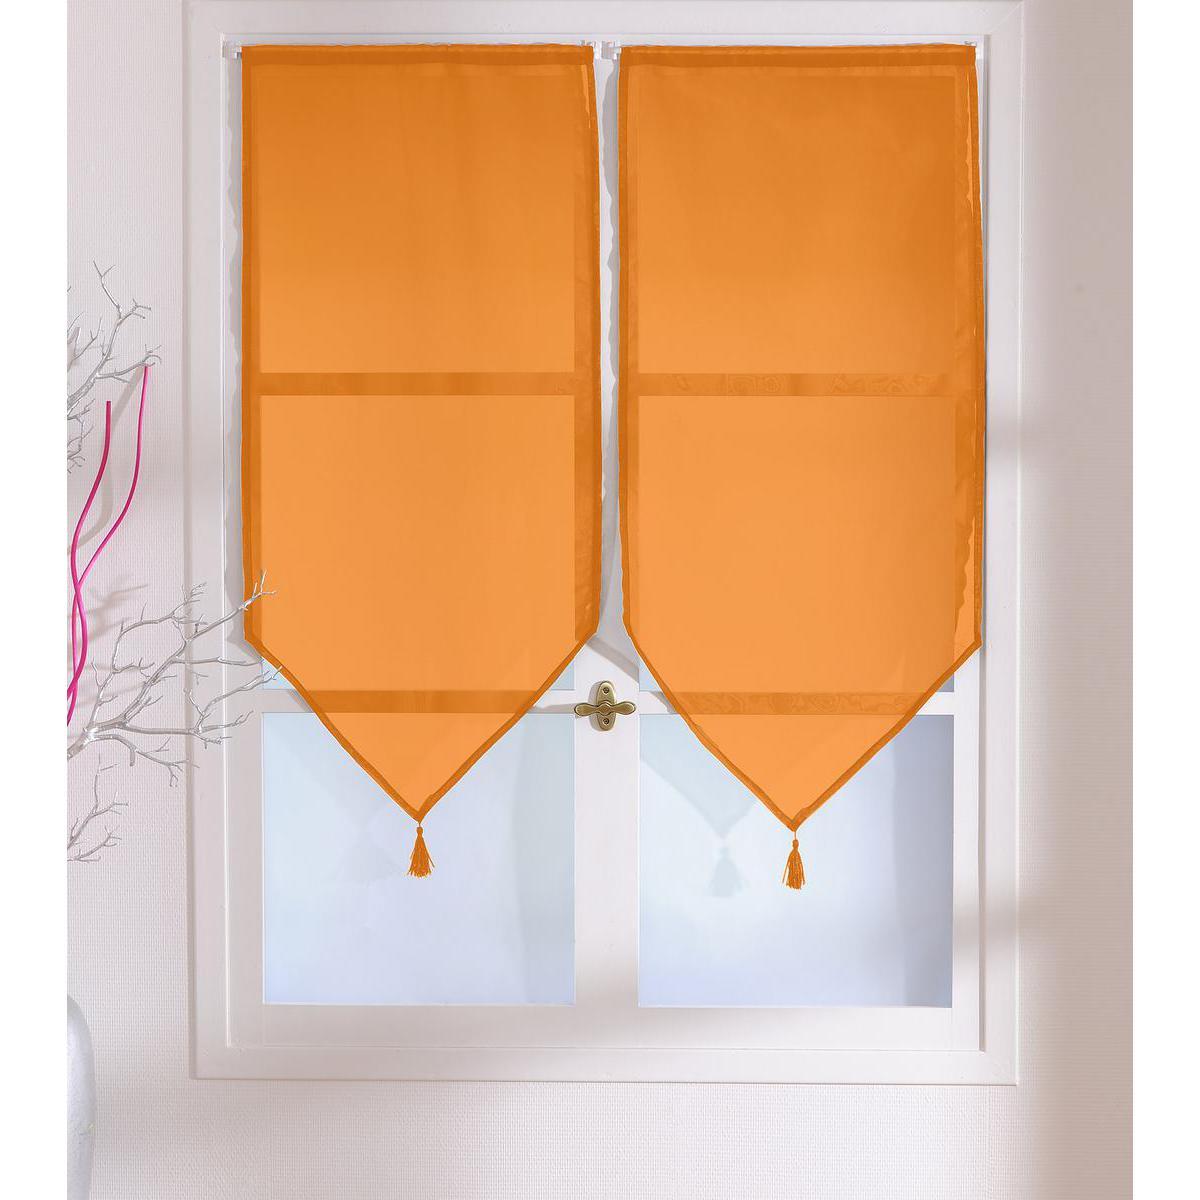 Paire de vitrages - 100% polyester - 60 x 120 cm - Orange